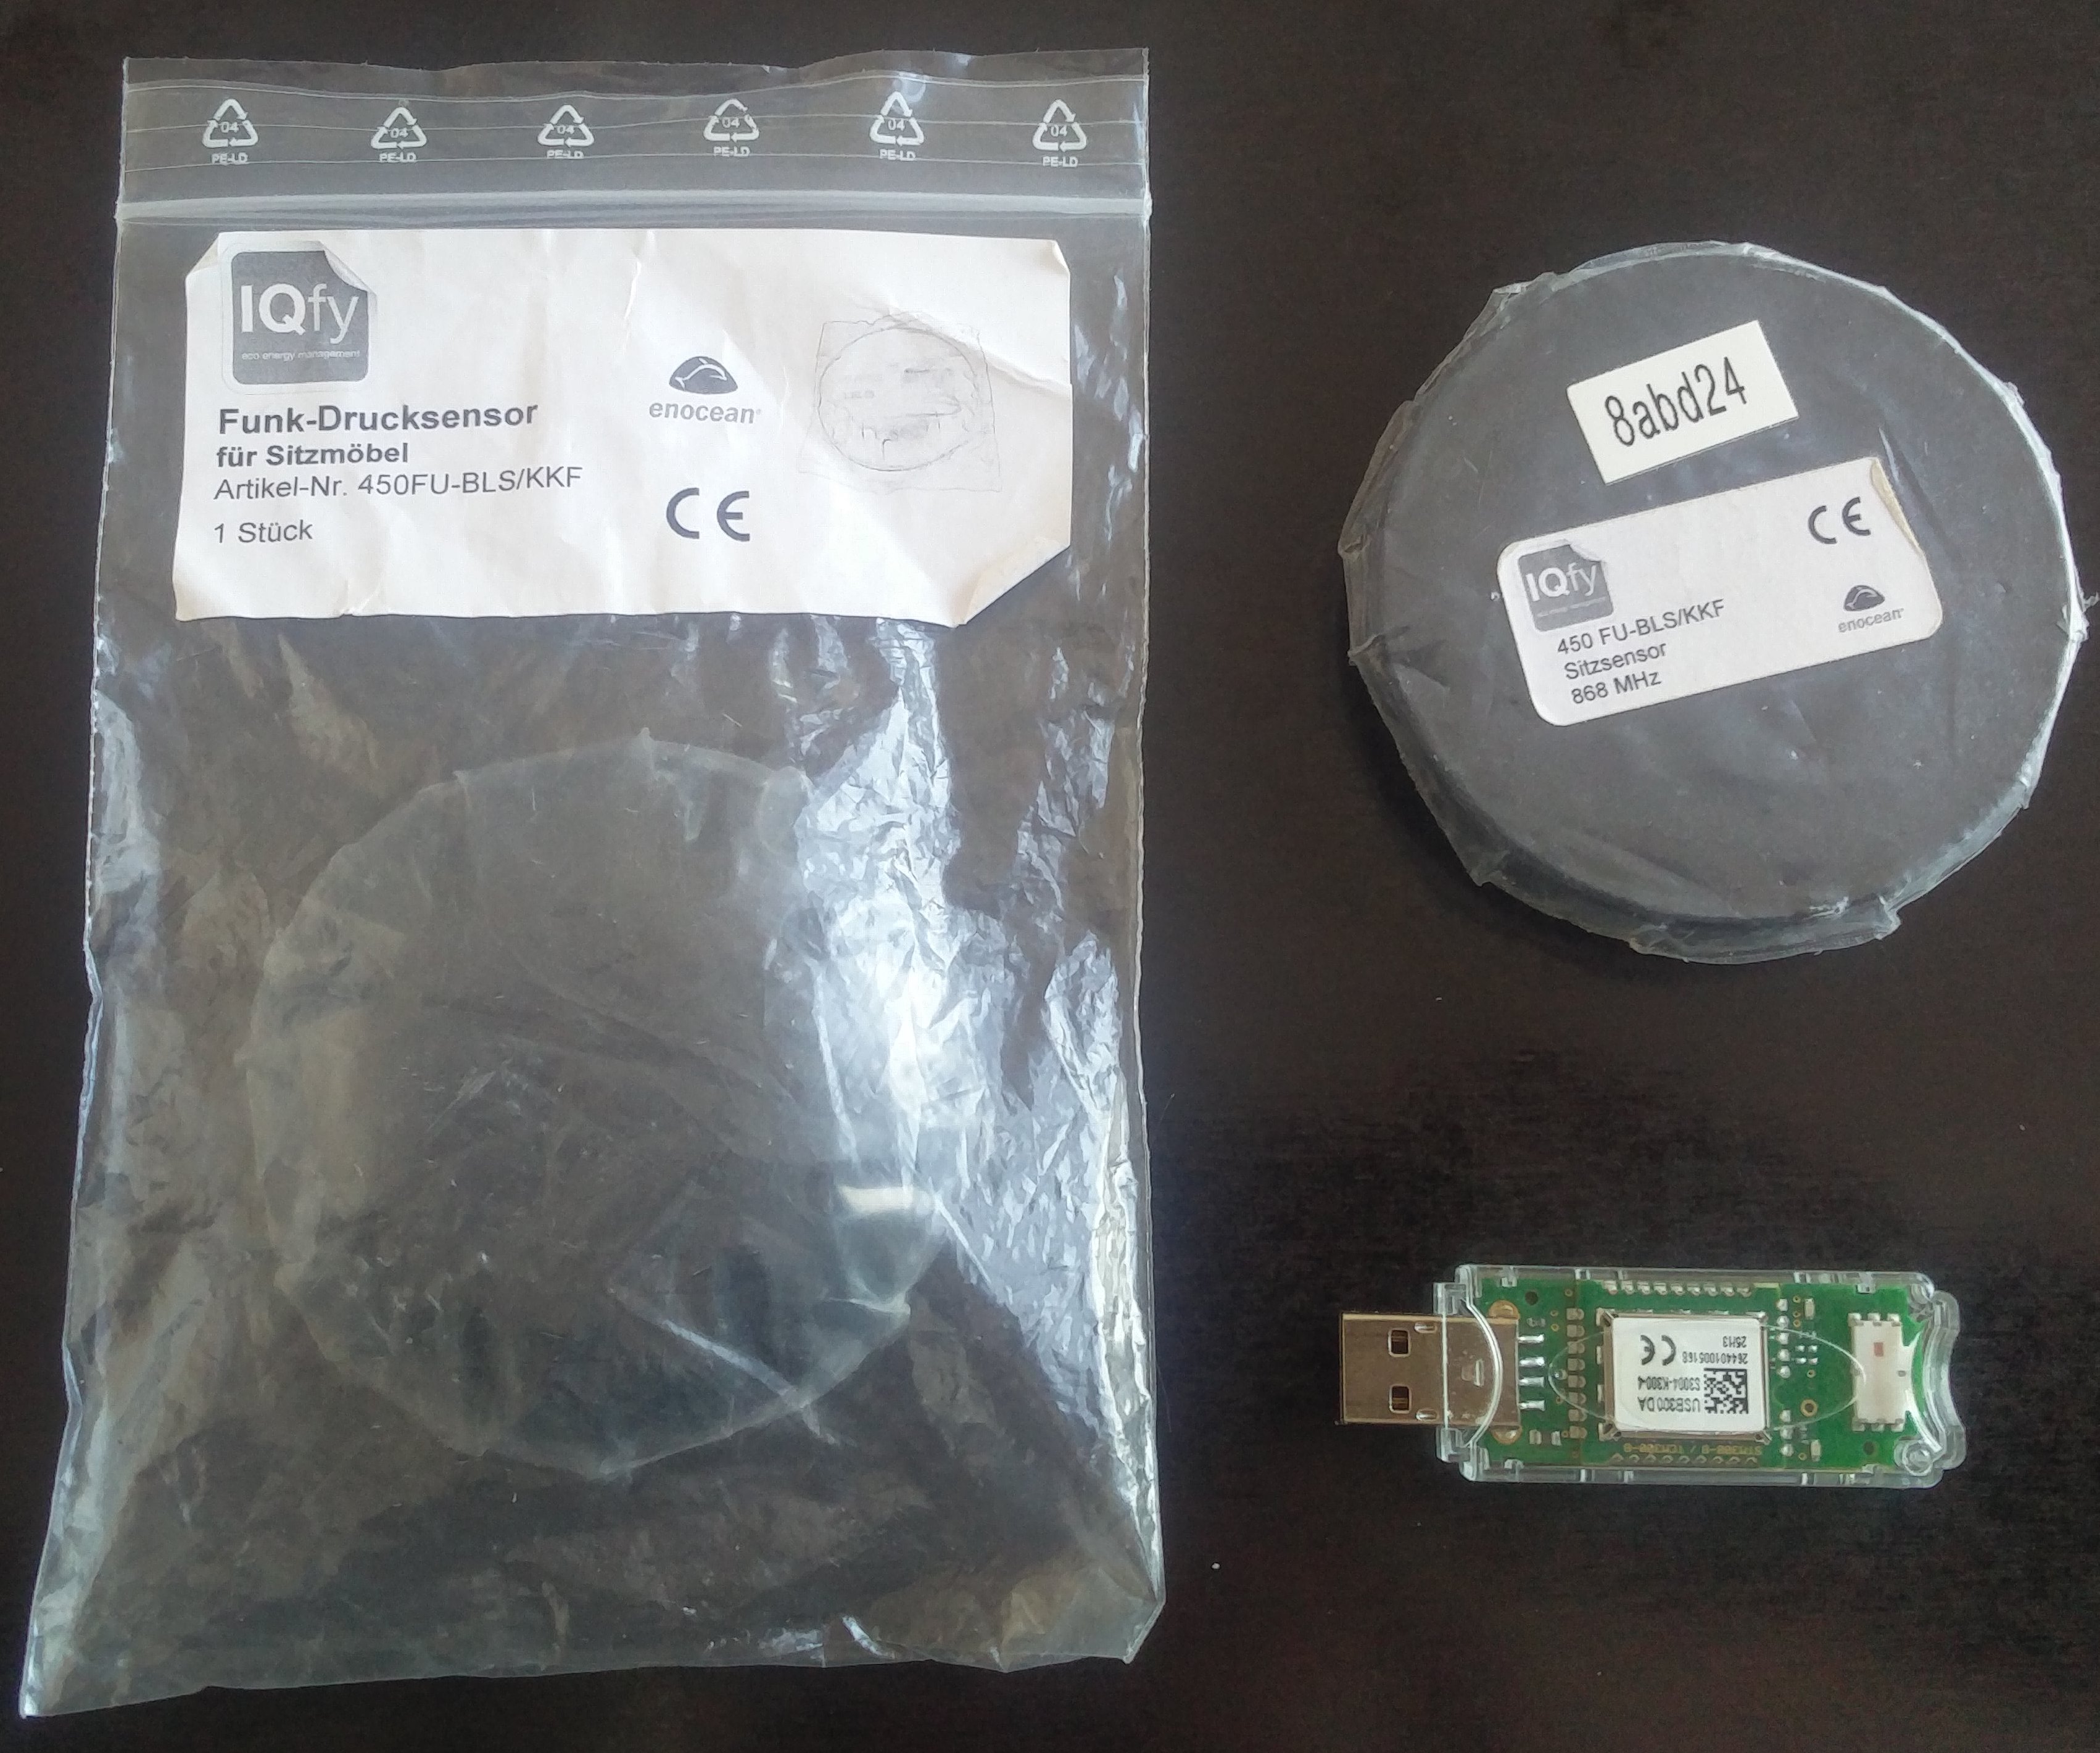 EnOcean Sensor and USB stick receiver